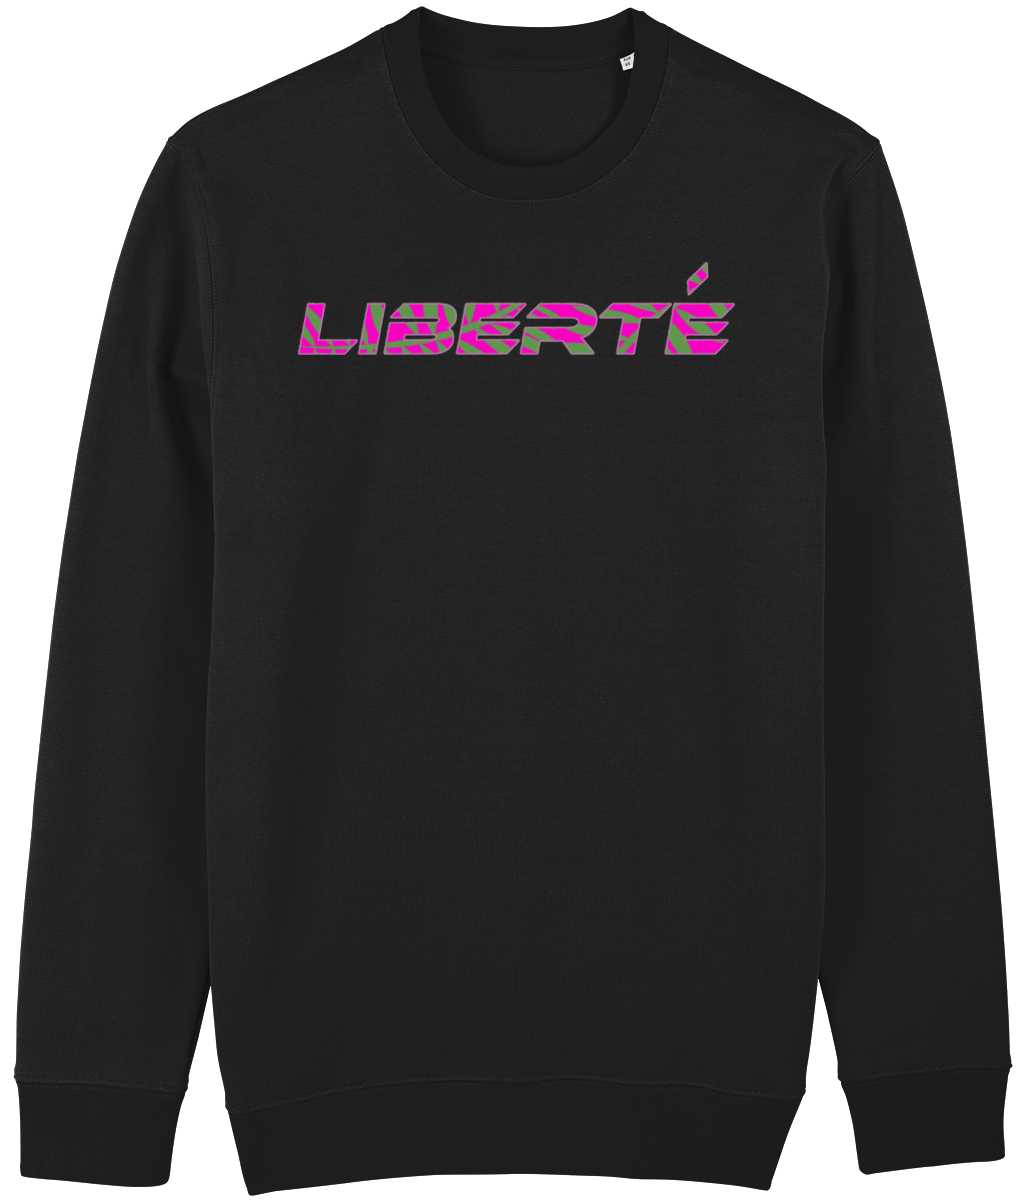 Liberté Camouflage print Sweatshirt-Cherchez la Femme brand